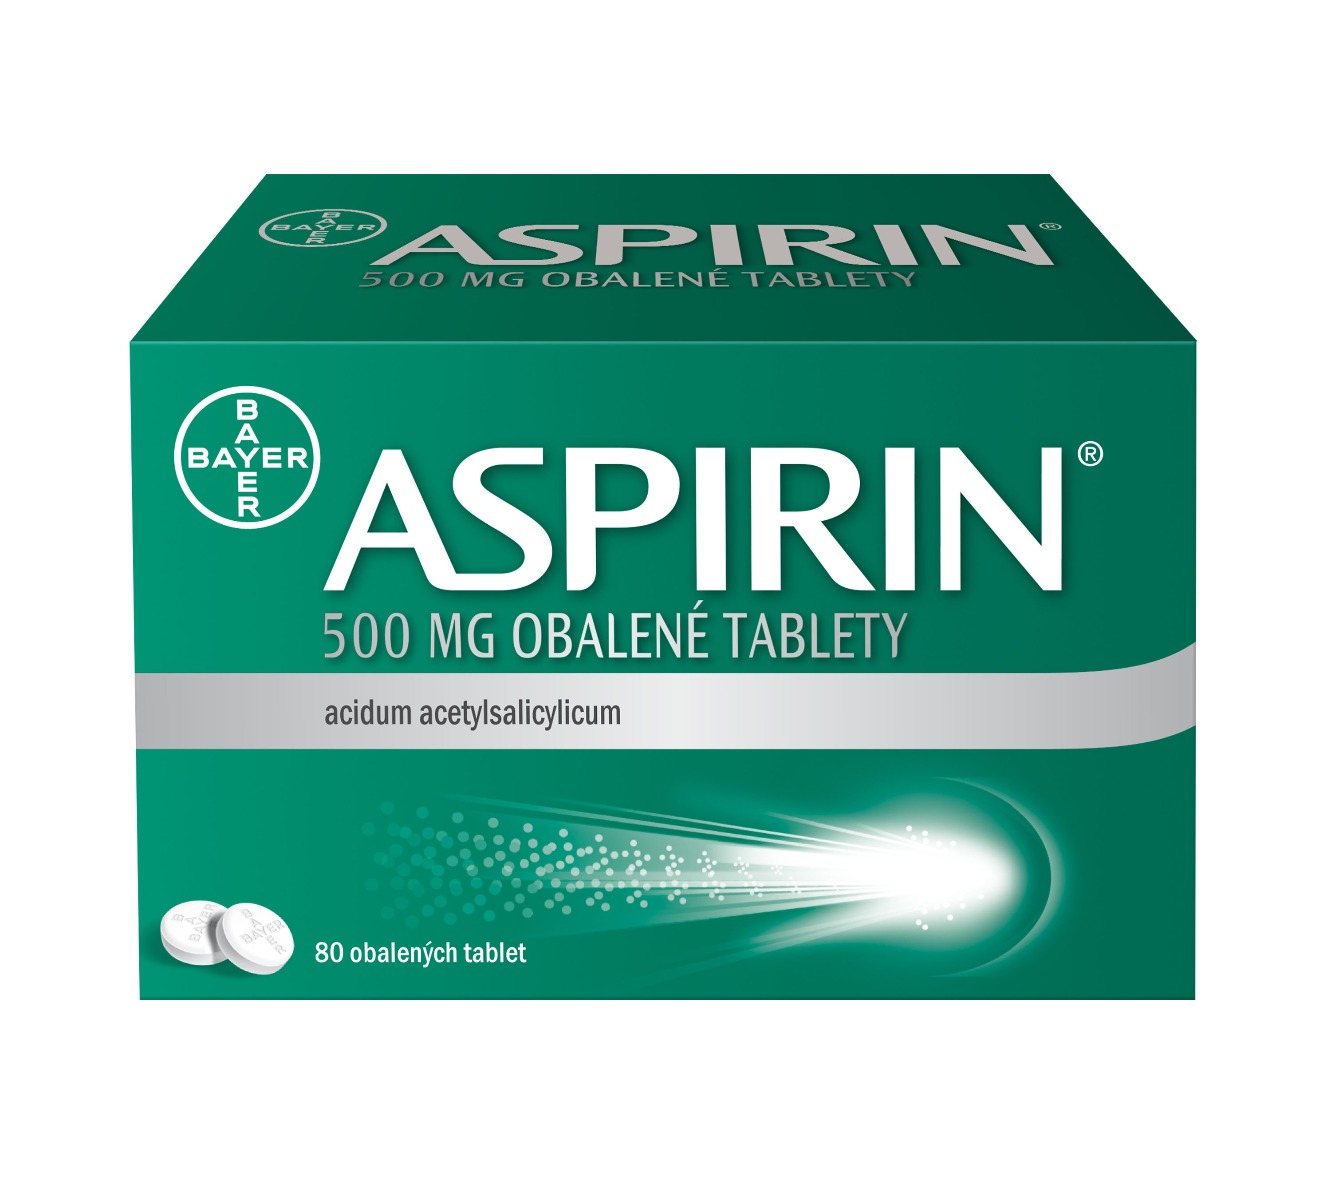 Aspirin 500 mg 80 tablet Aspirin